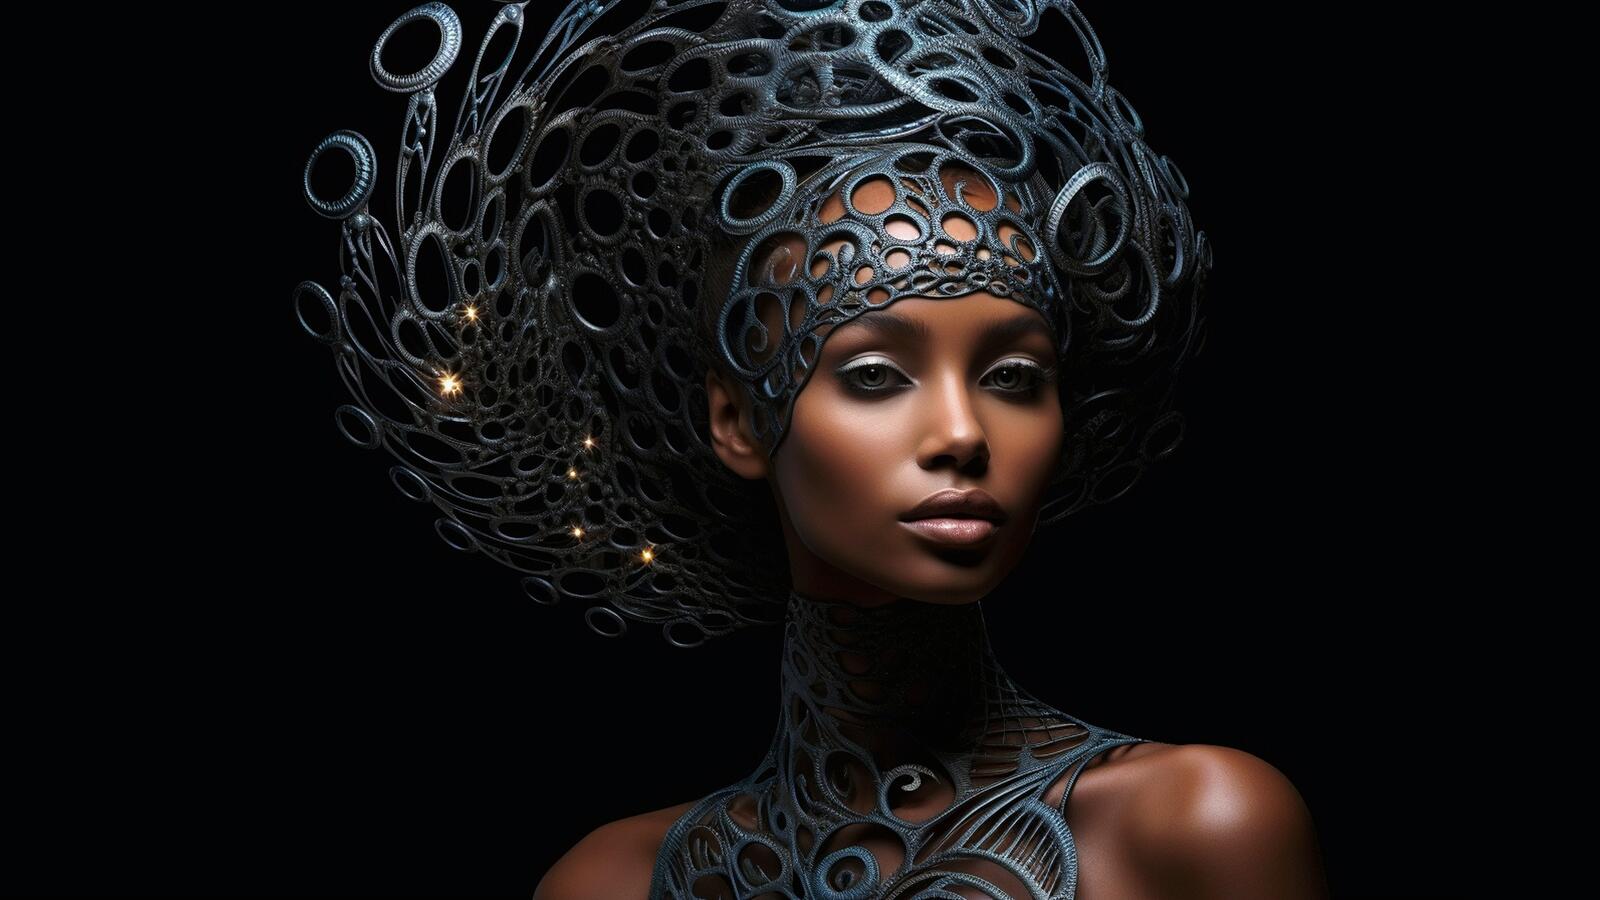 Бесплатное фото Портрет чернокожей девушки с необычным головным убором на голове